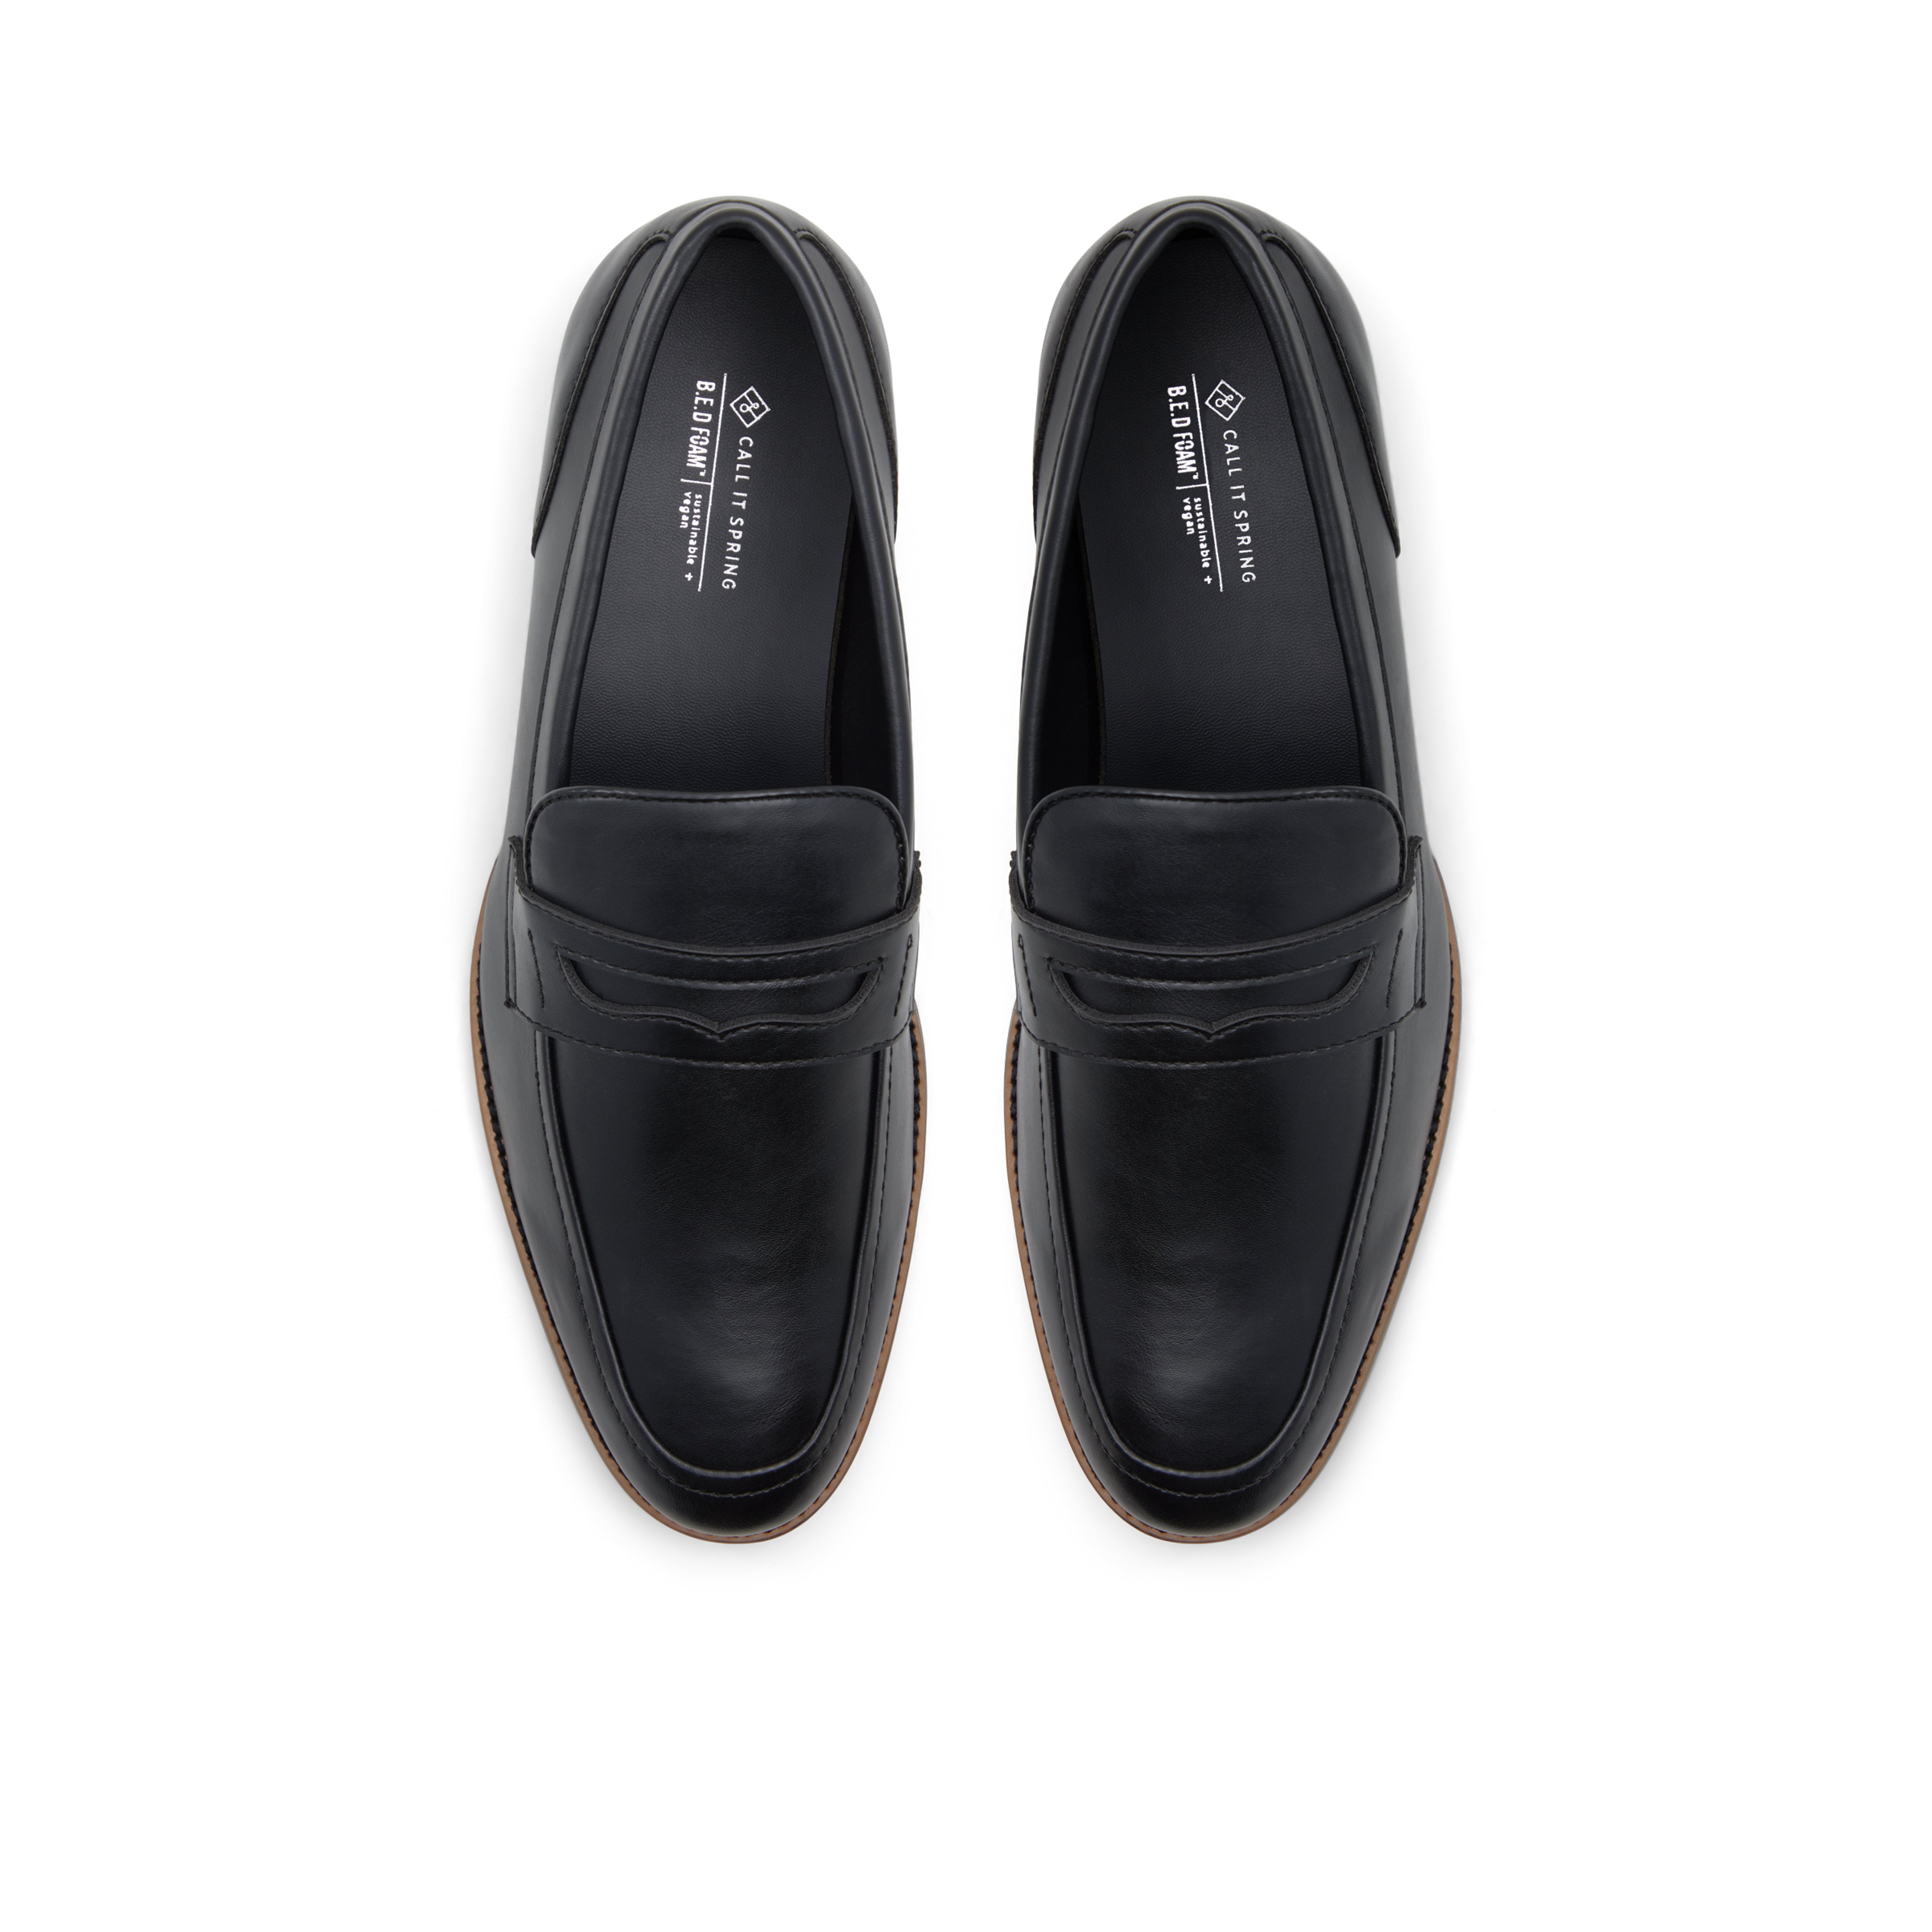 Pinchard Men's Black Dress Loafers image number 1